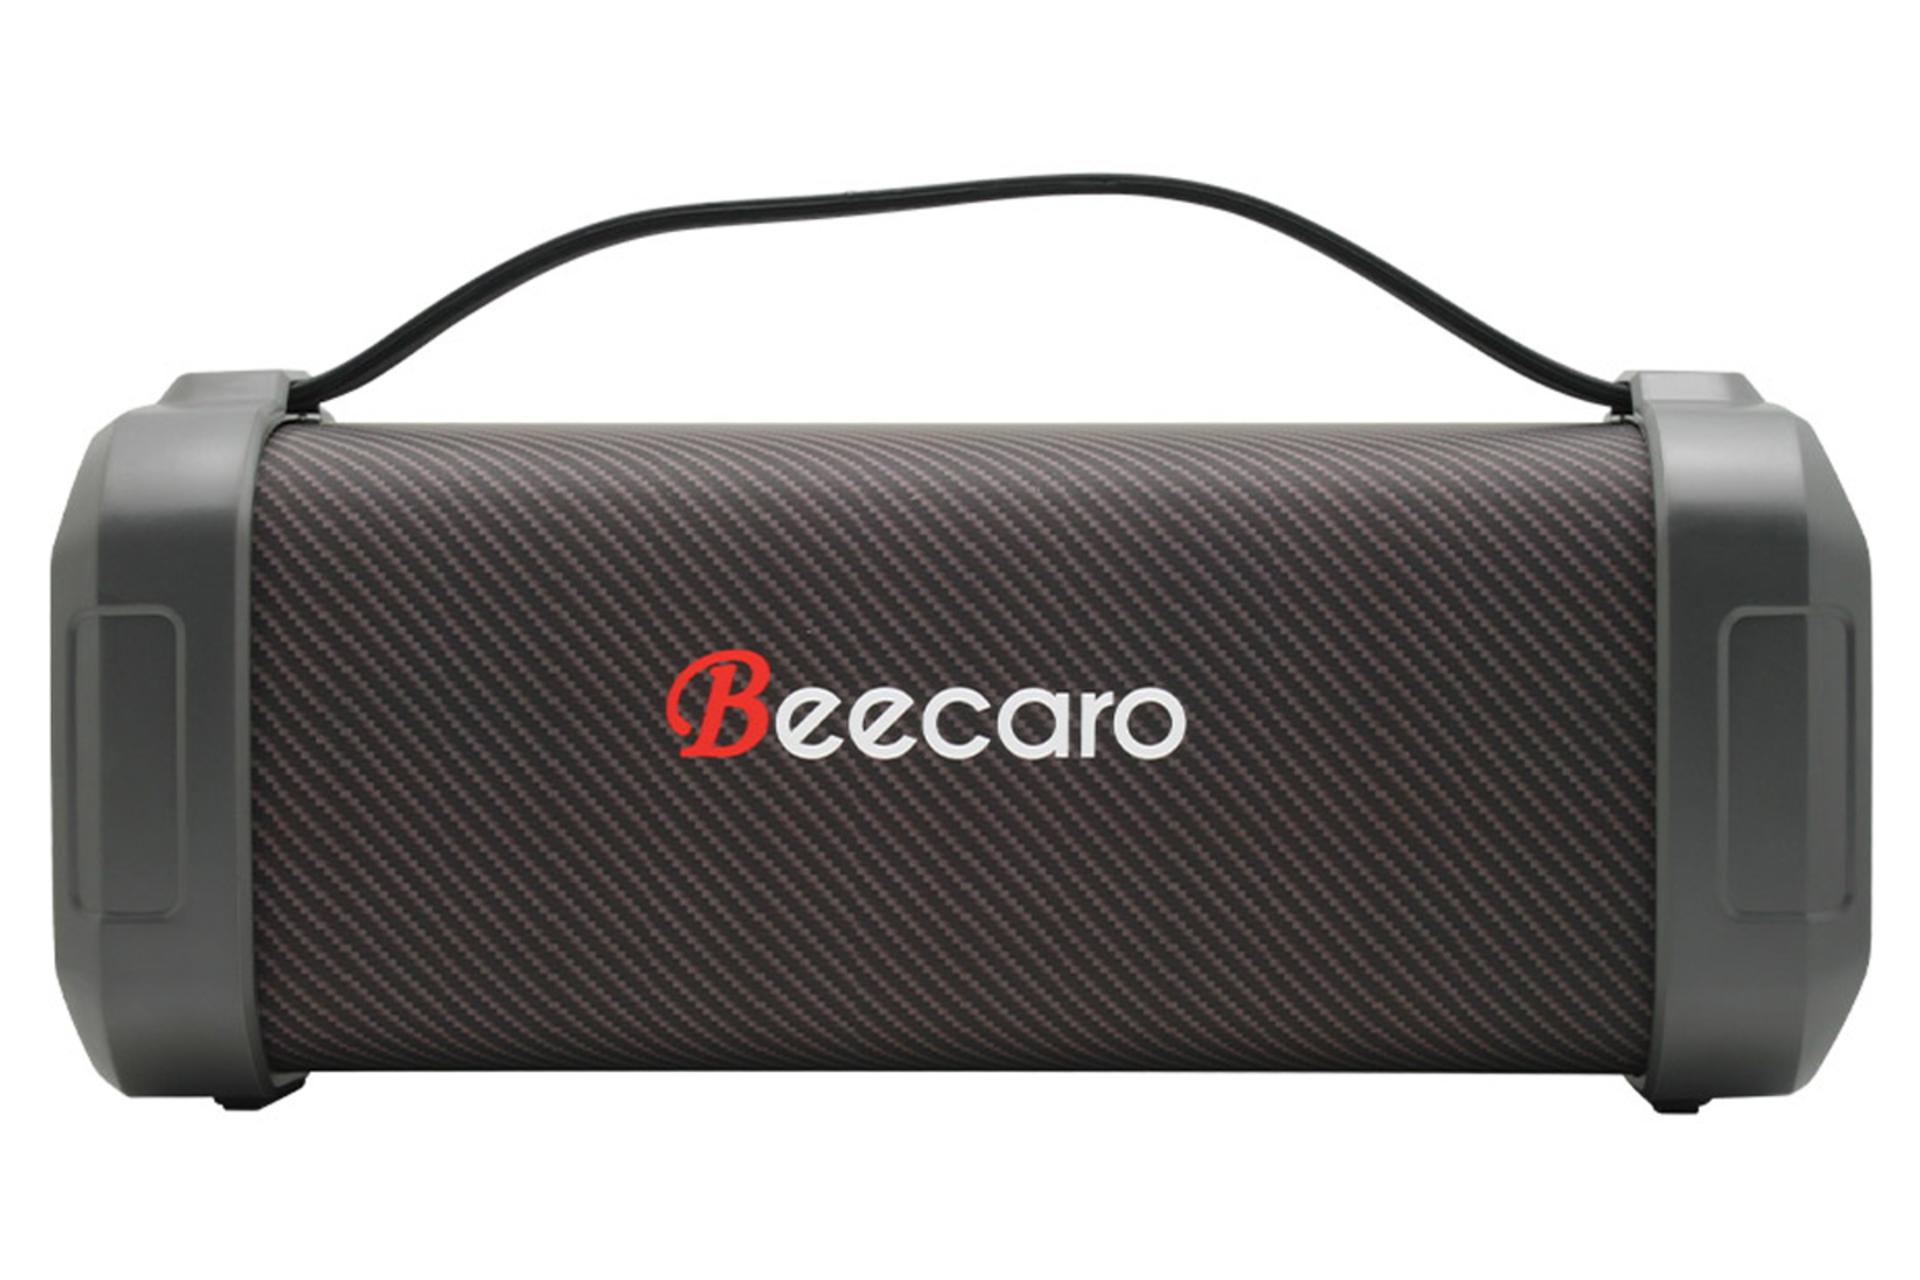 ابعاد اسپیکر بیکارو Beecaro F62D